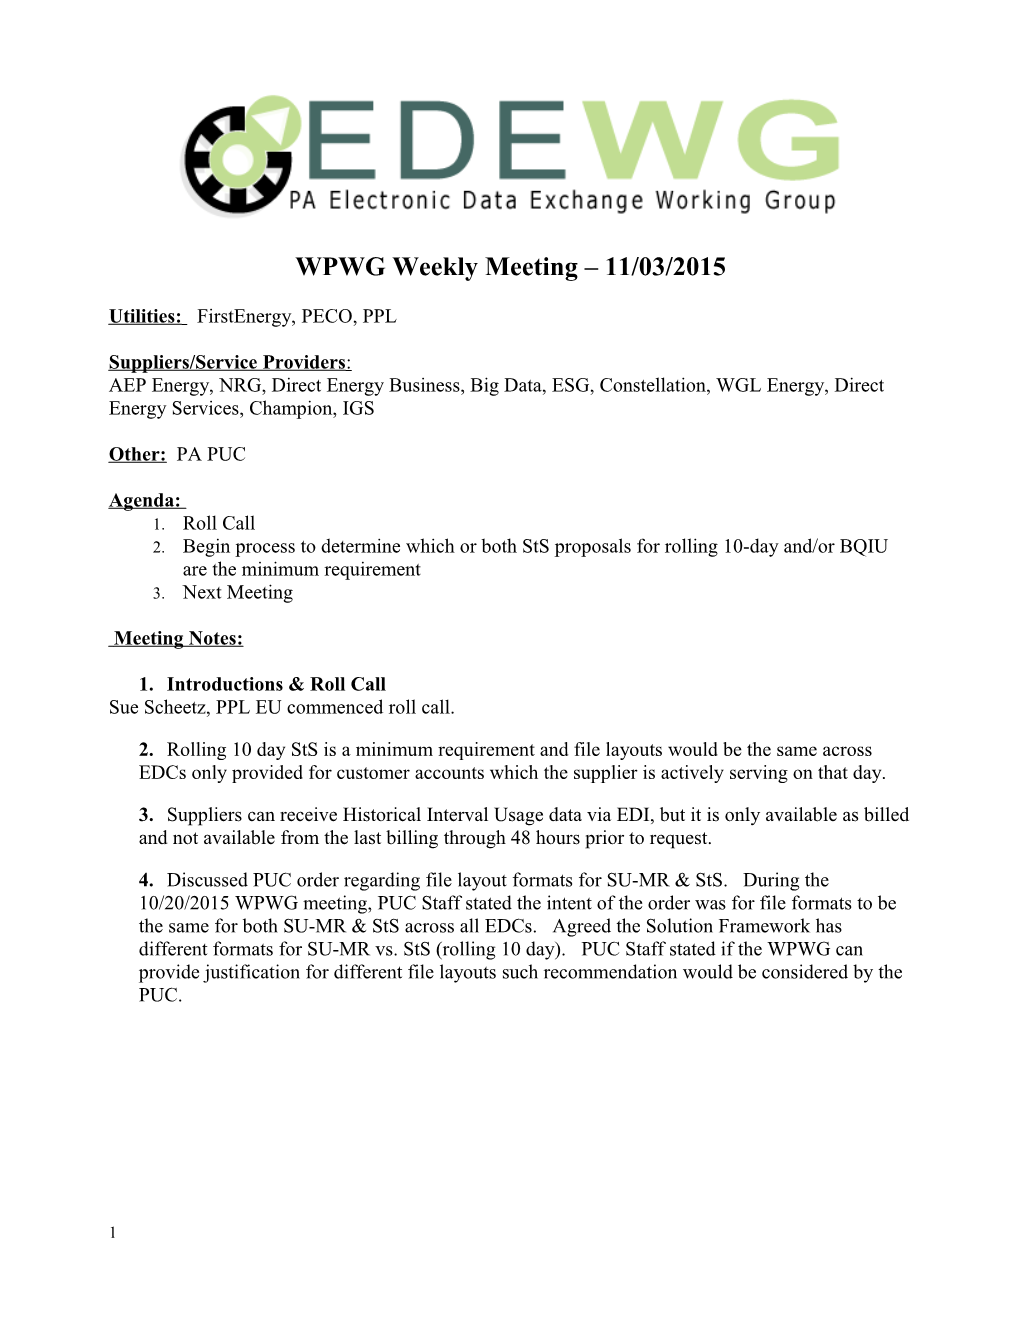 EDEWG Meeting Minutes s1